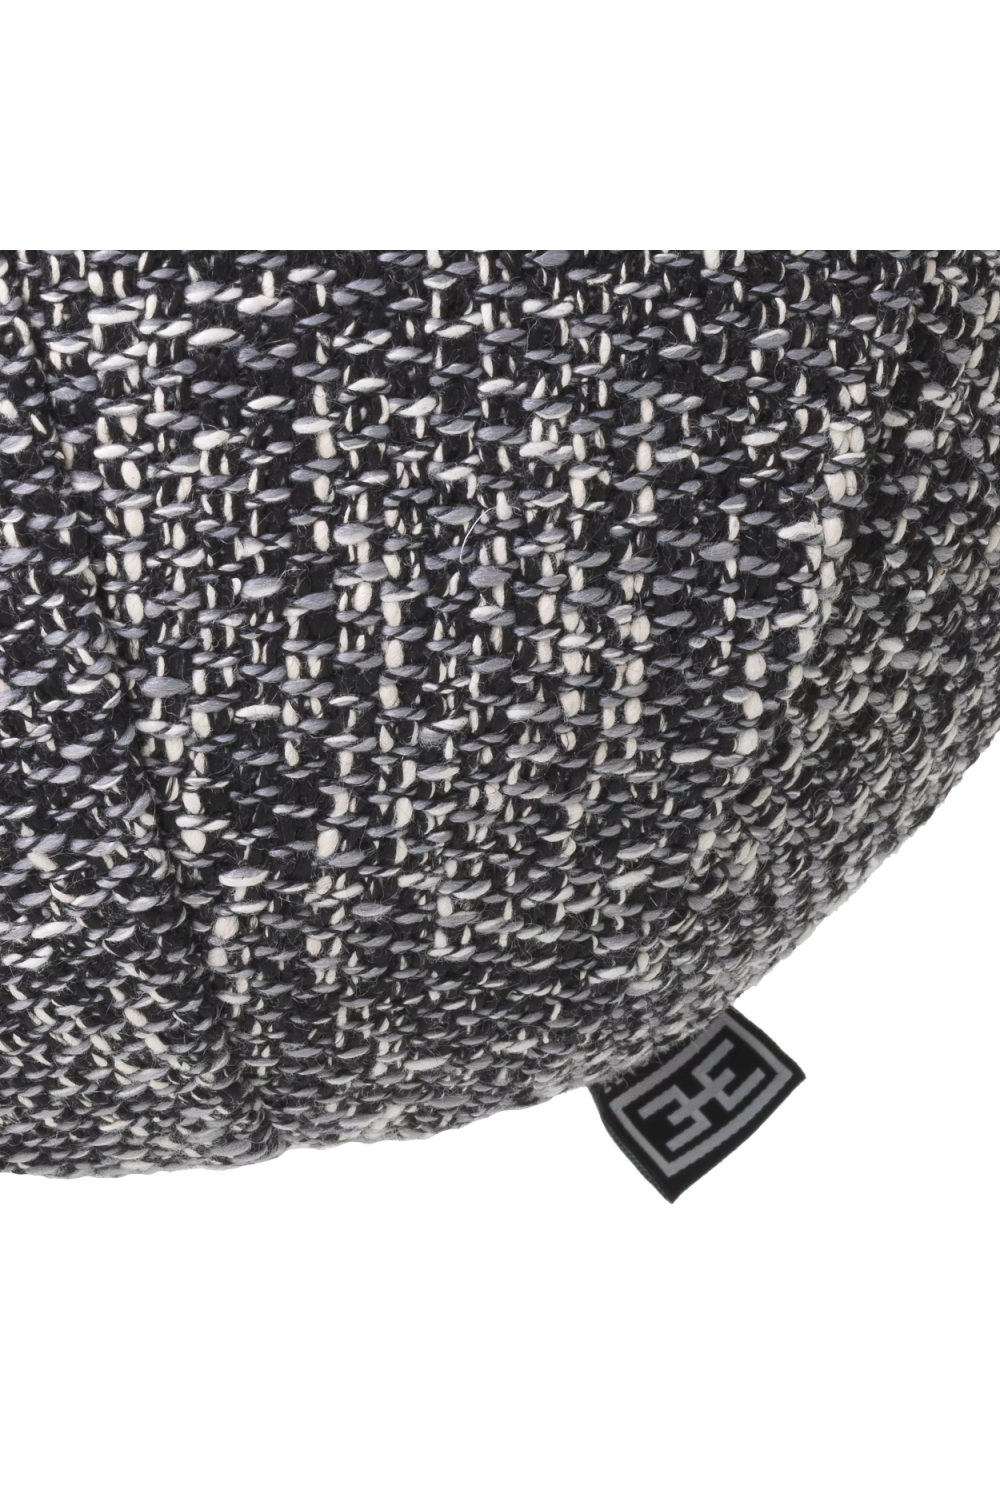 Black Sphere Cushion | Eichholtz Palla | Oroa.com